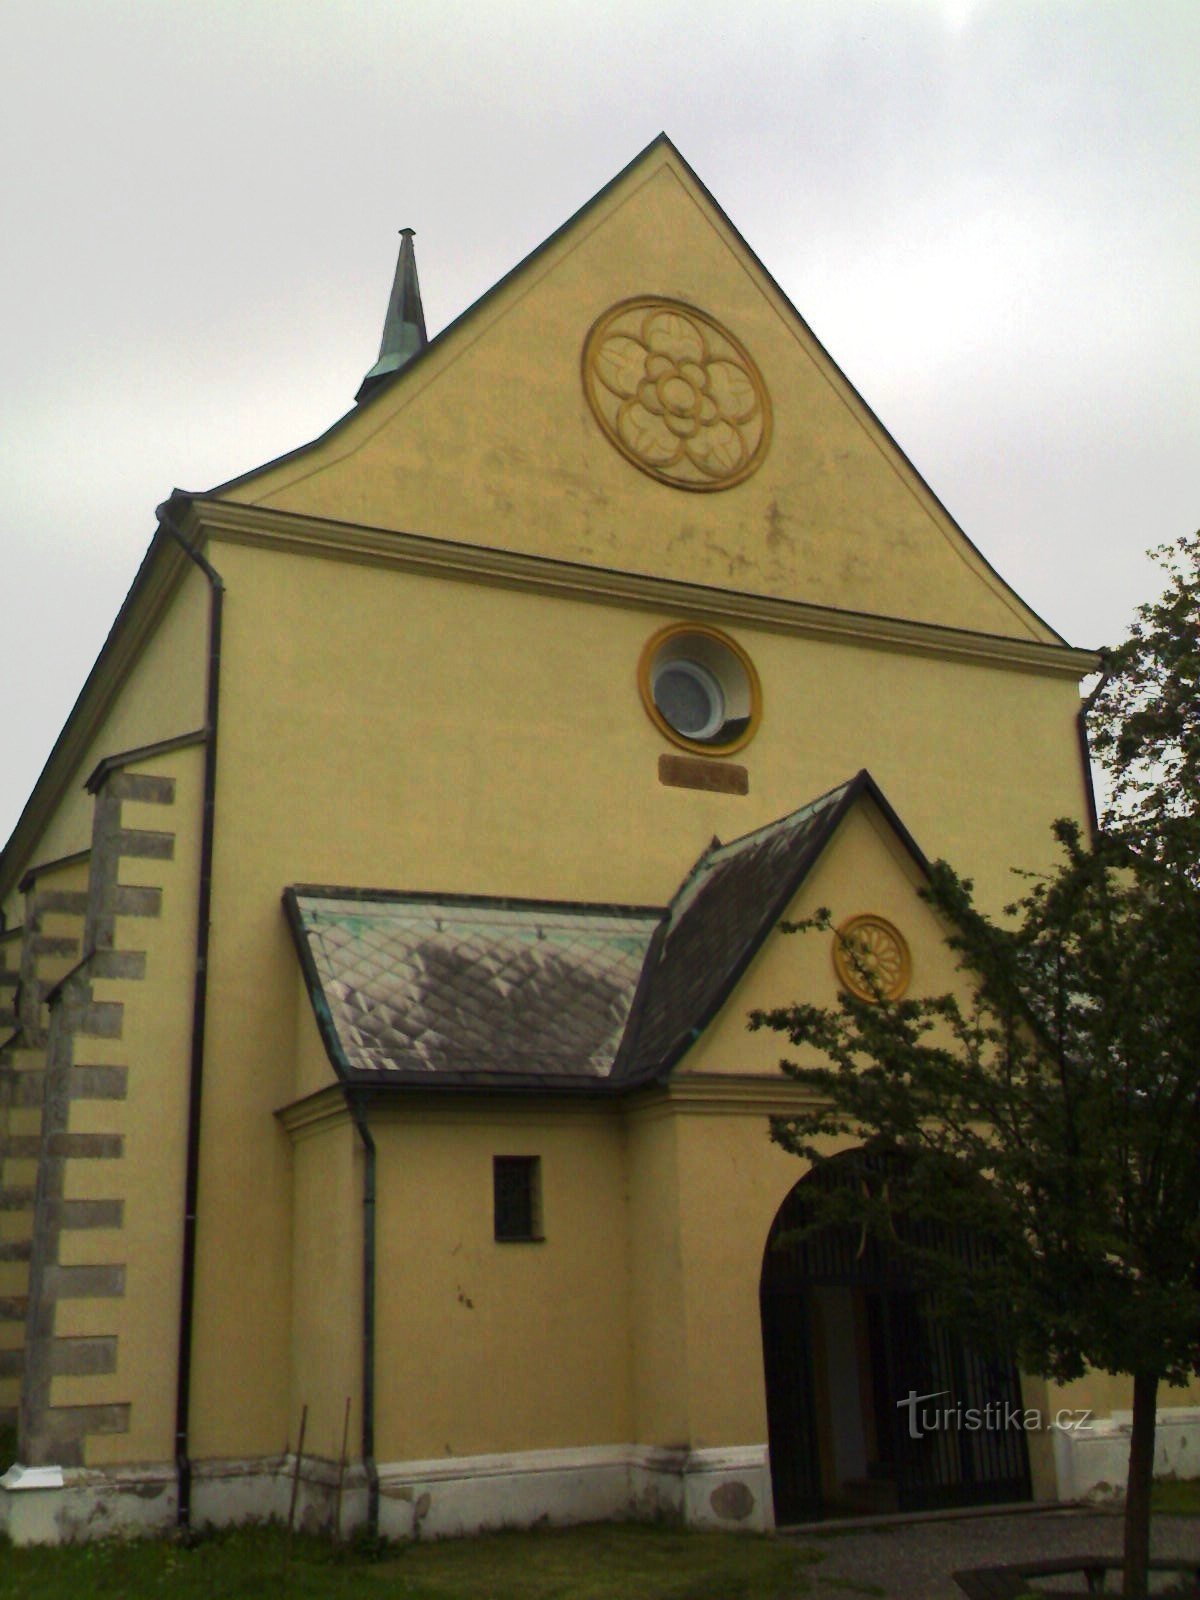 Rovensko pod Troskami - Pyhän Nikolauksen kirkko. Wenceslas